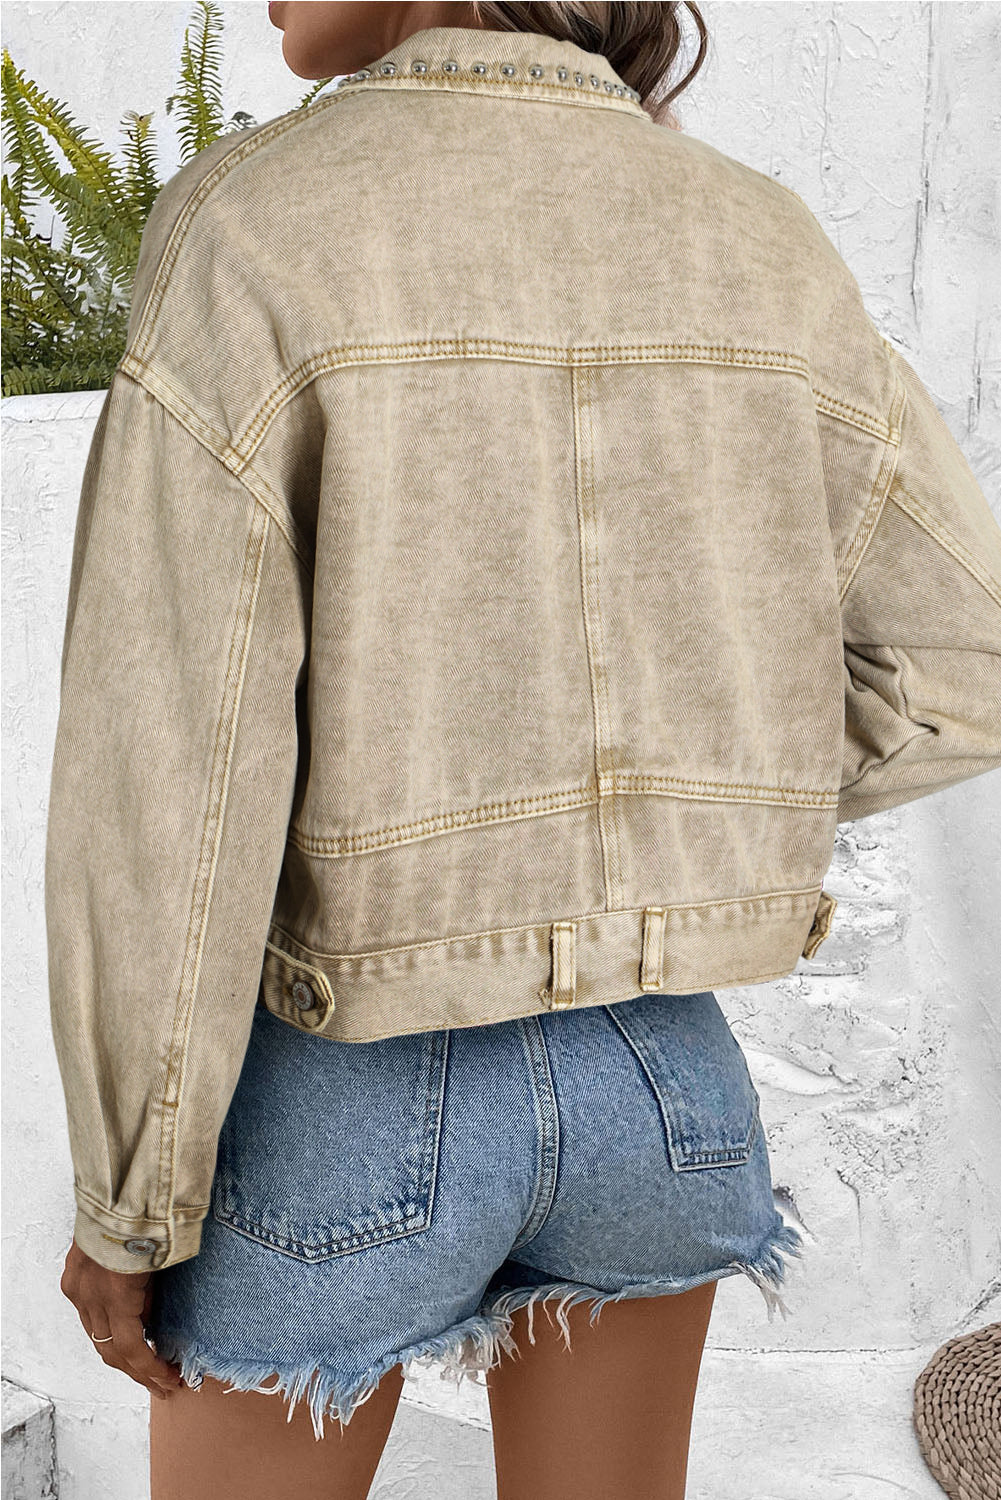 Rivet Studded Pocketed Women's Denim Jacket - women's denim jacket at TFC&H Co.